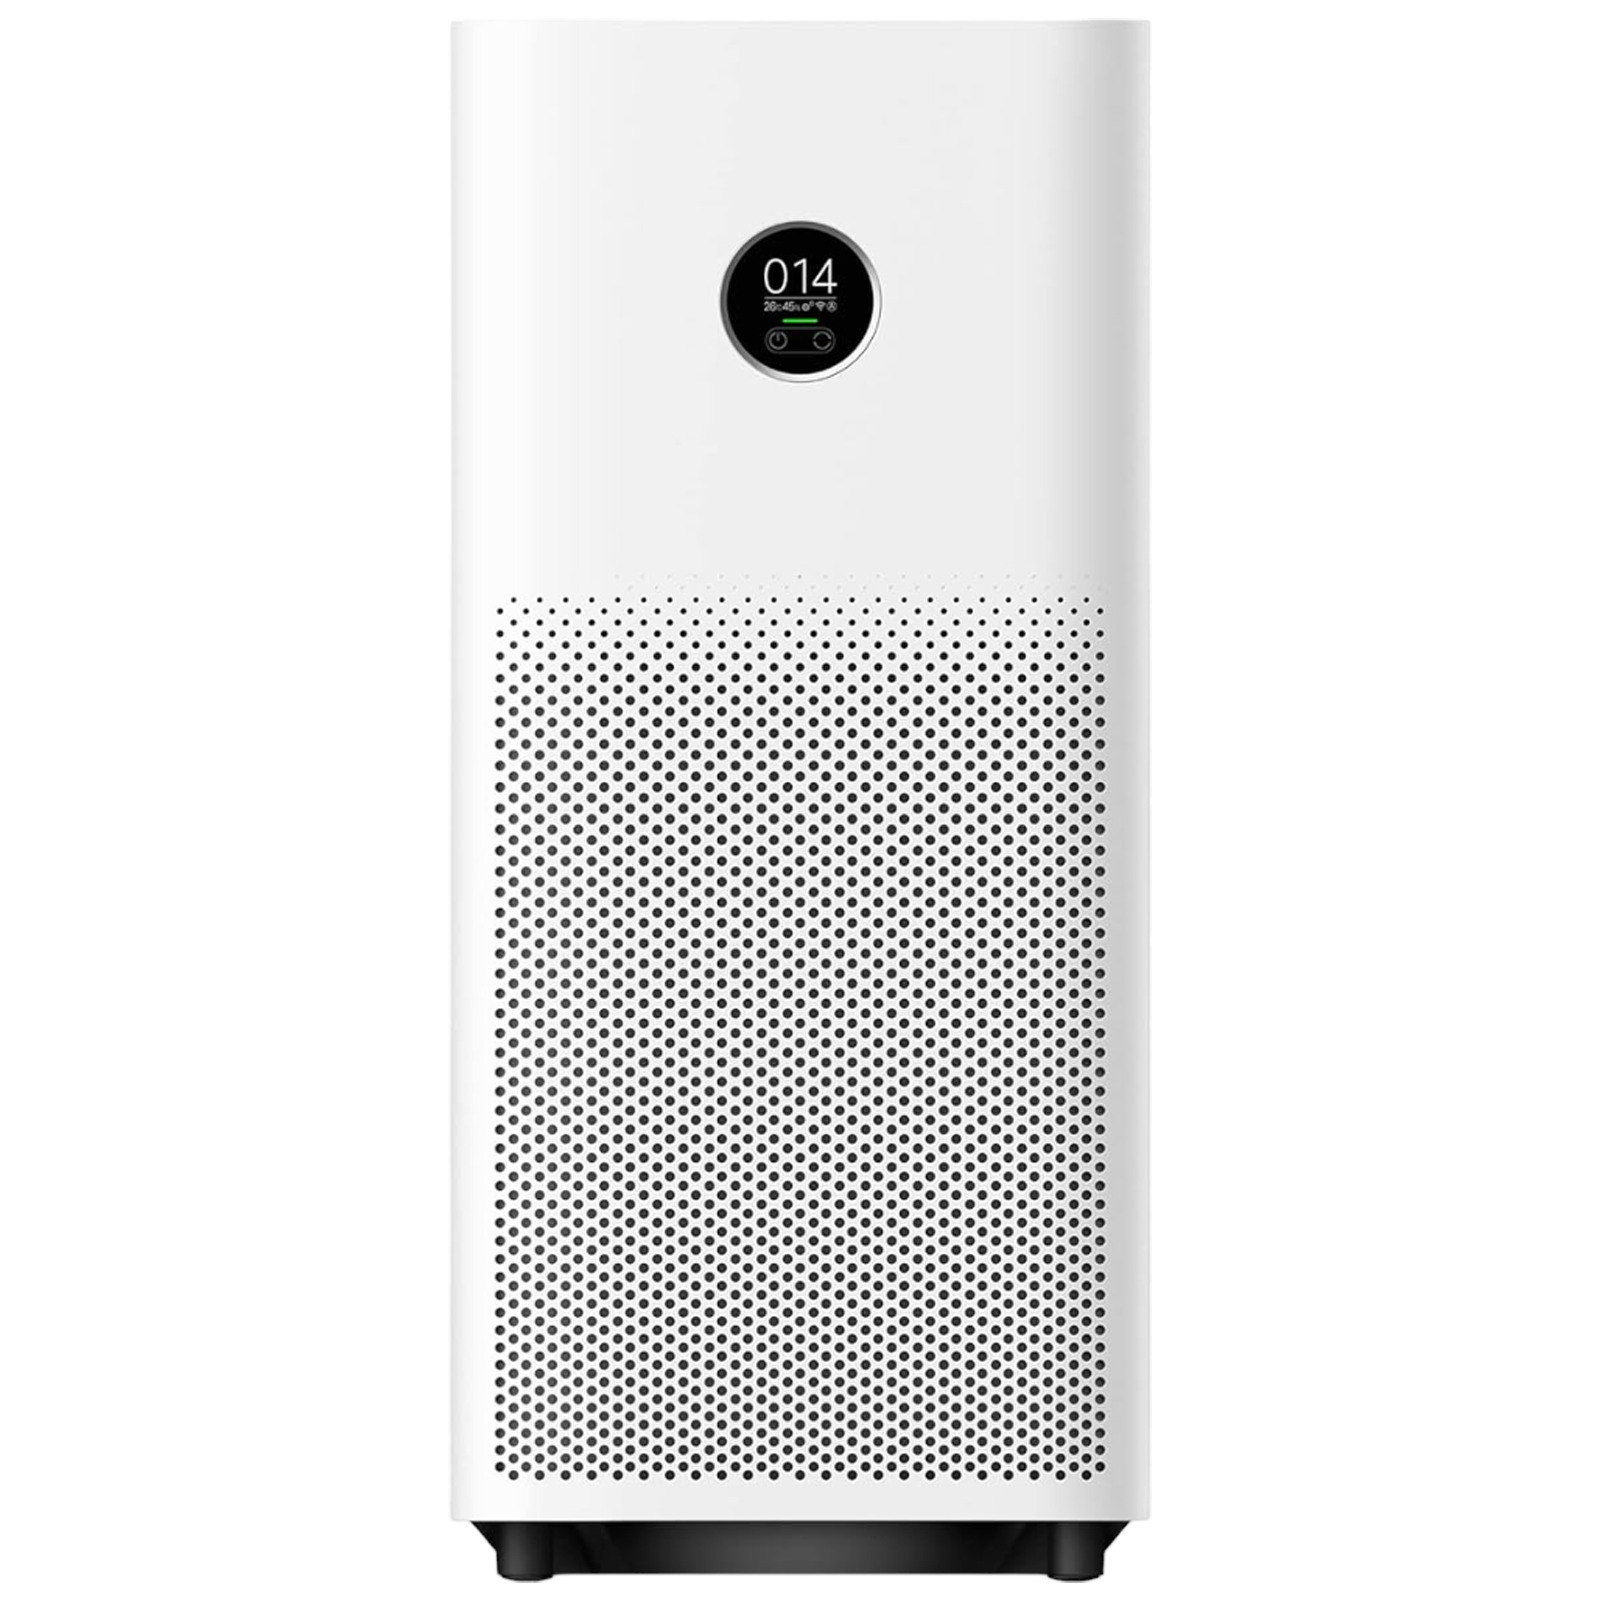 Xiaomi Smart Air Purifier 4 review: Like a breath of fresh air